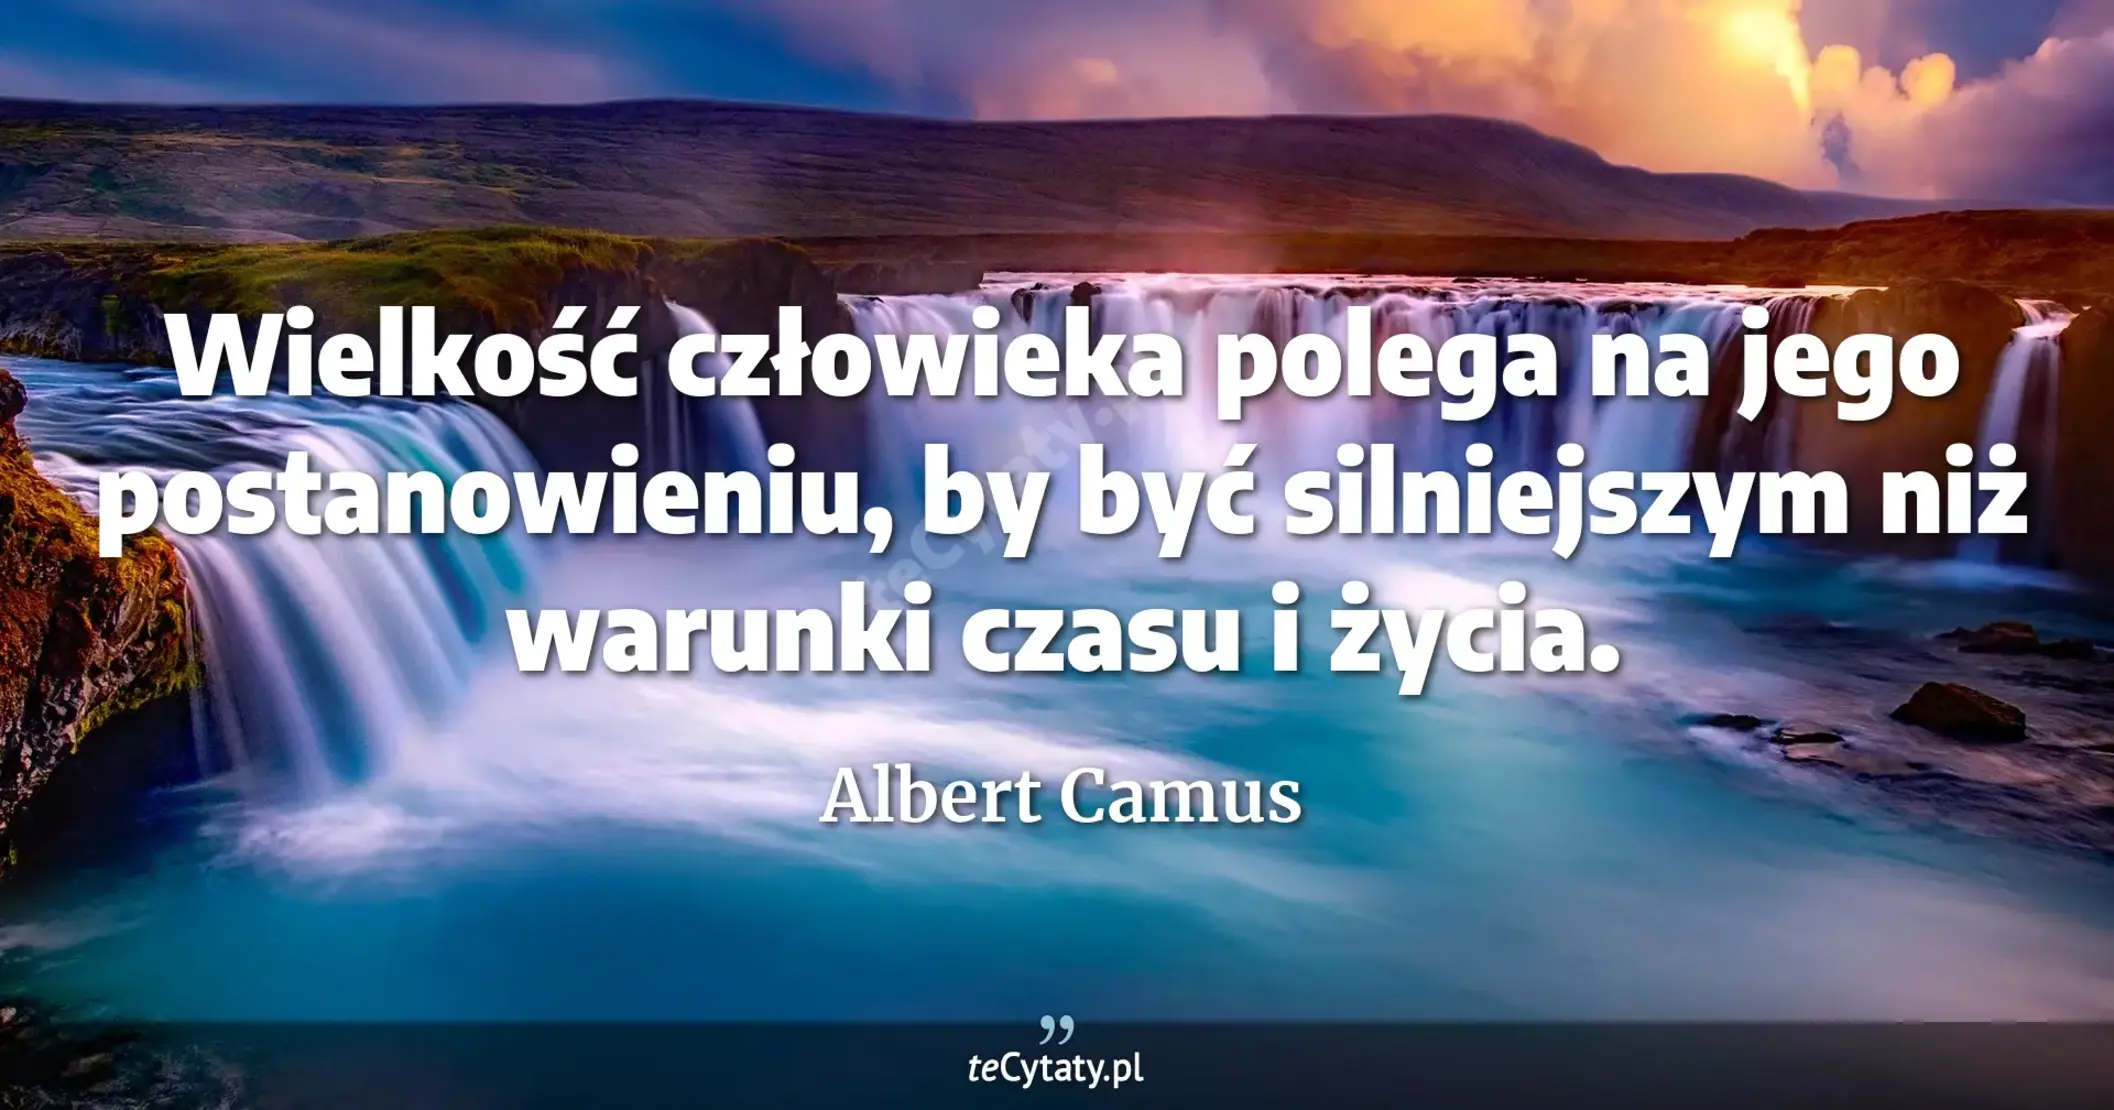 Wielkość człowieka polega na jego postanowieniu, by być silniejszym niż warunki czasu i życia. - Albert Camus